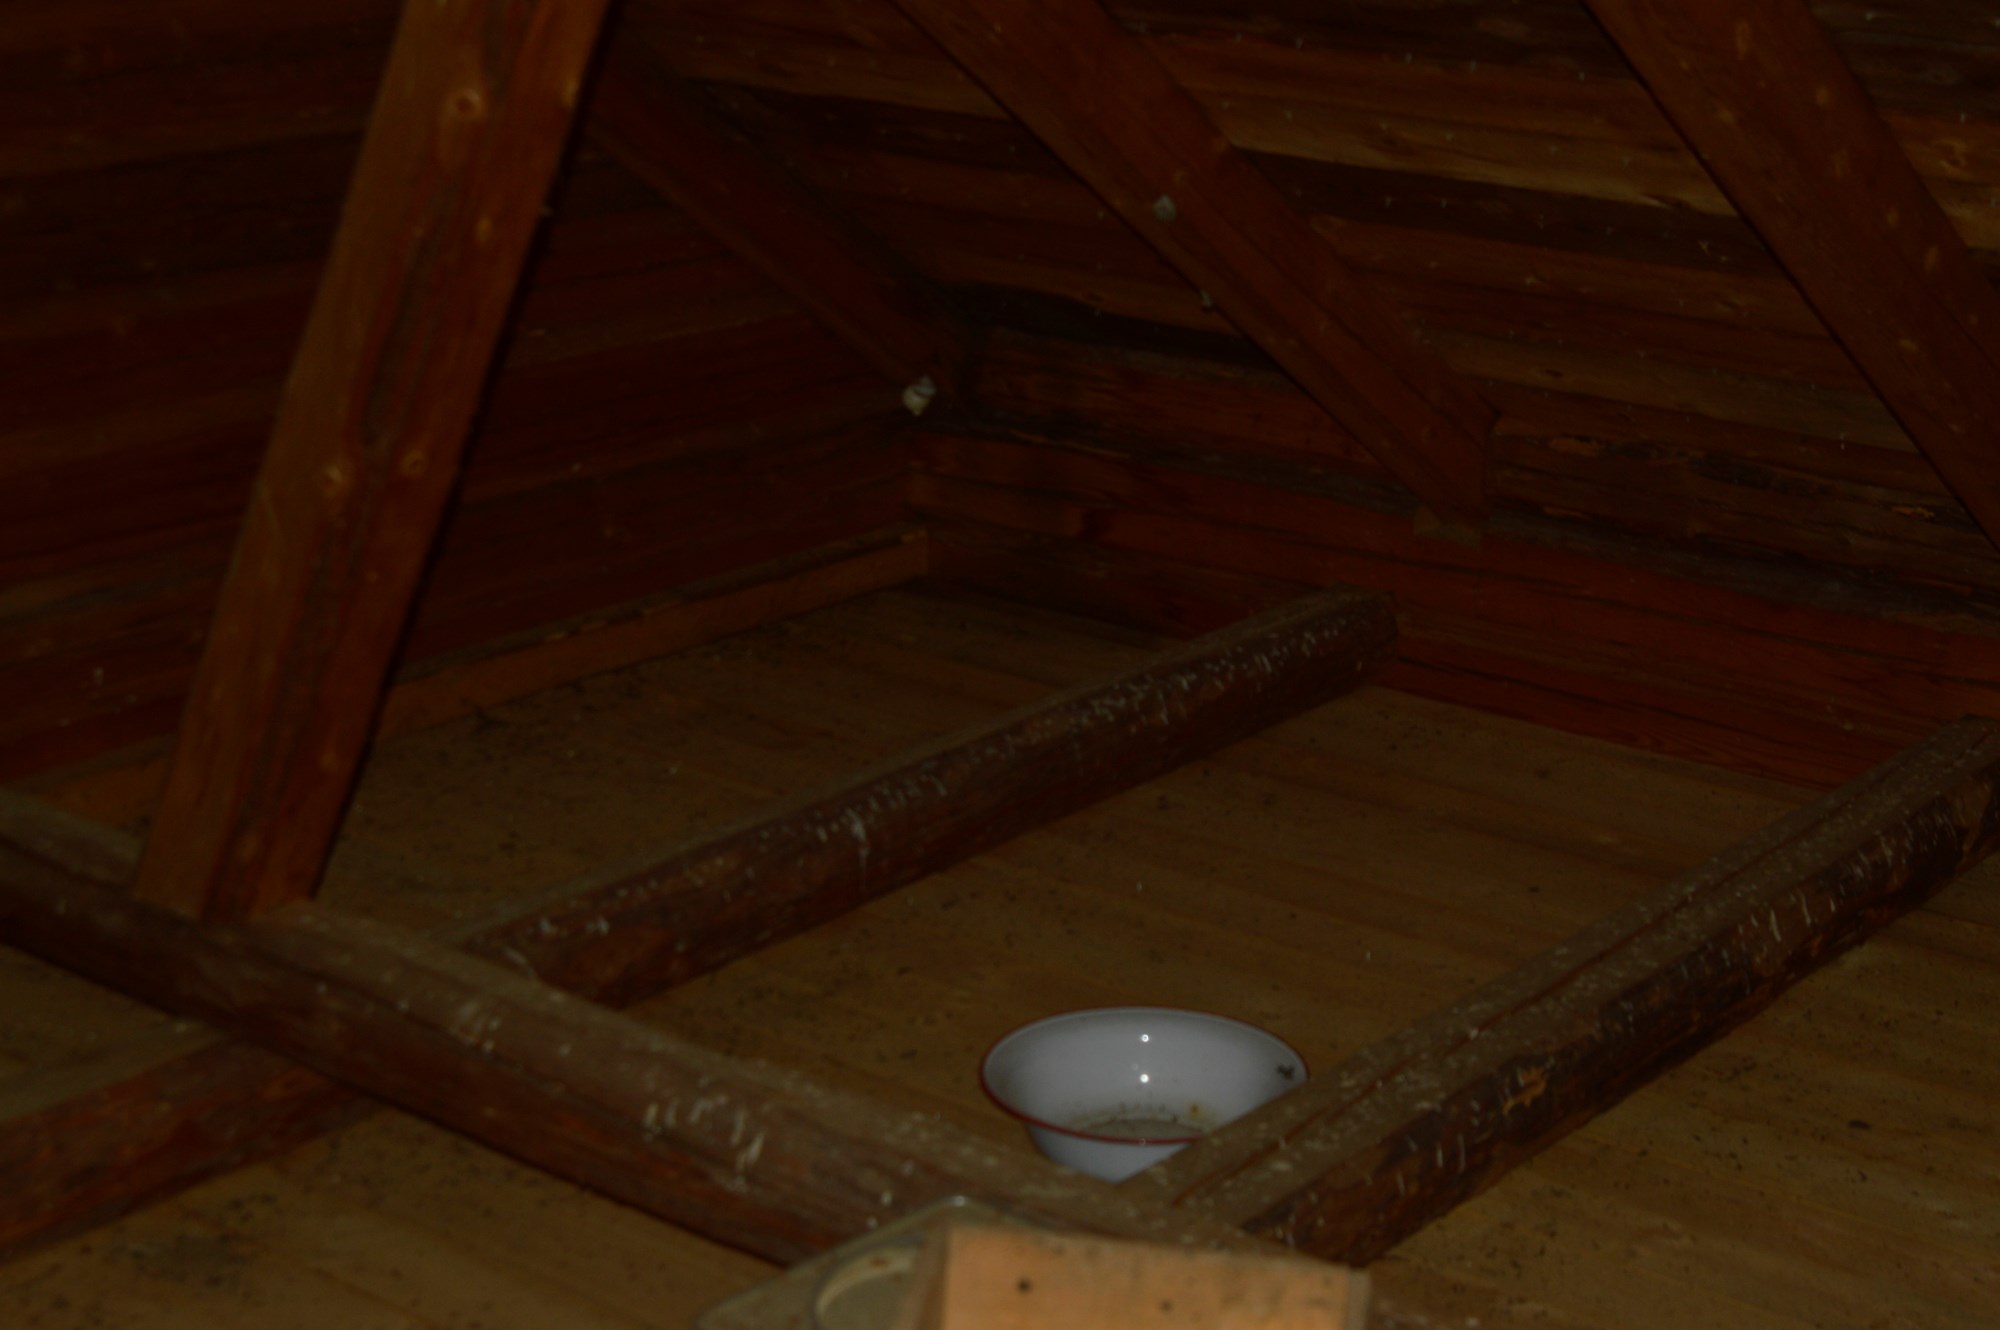 Isolere loft i gammelt tømmerhus - _DSC0366.JPG - Mindlink